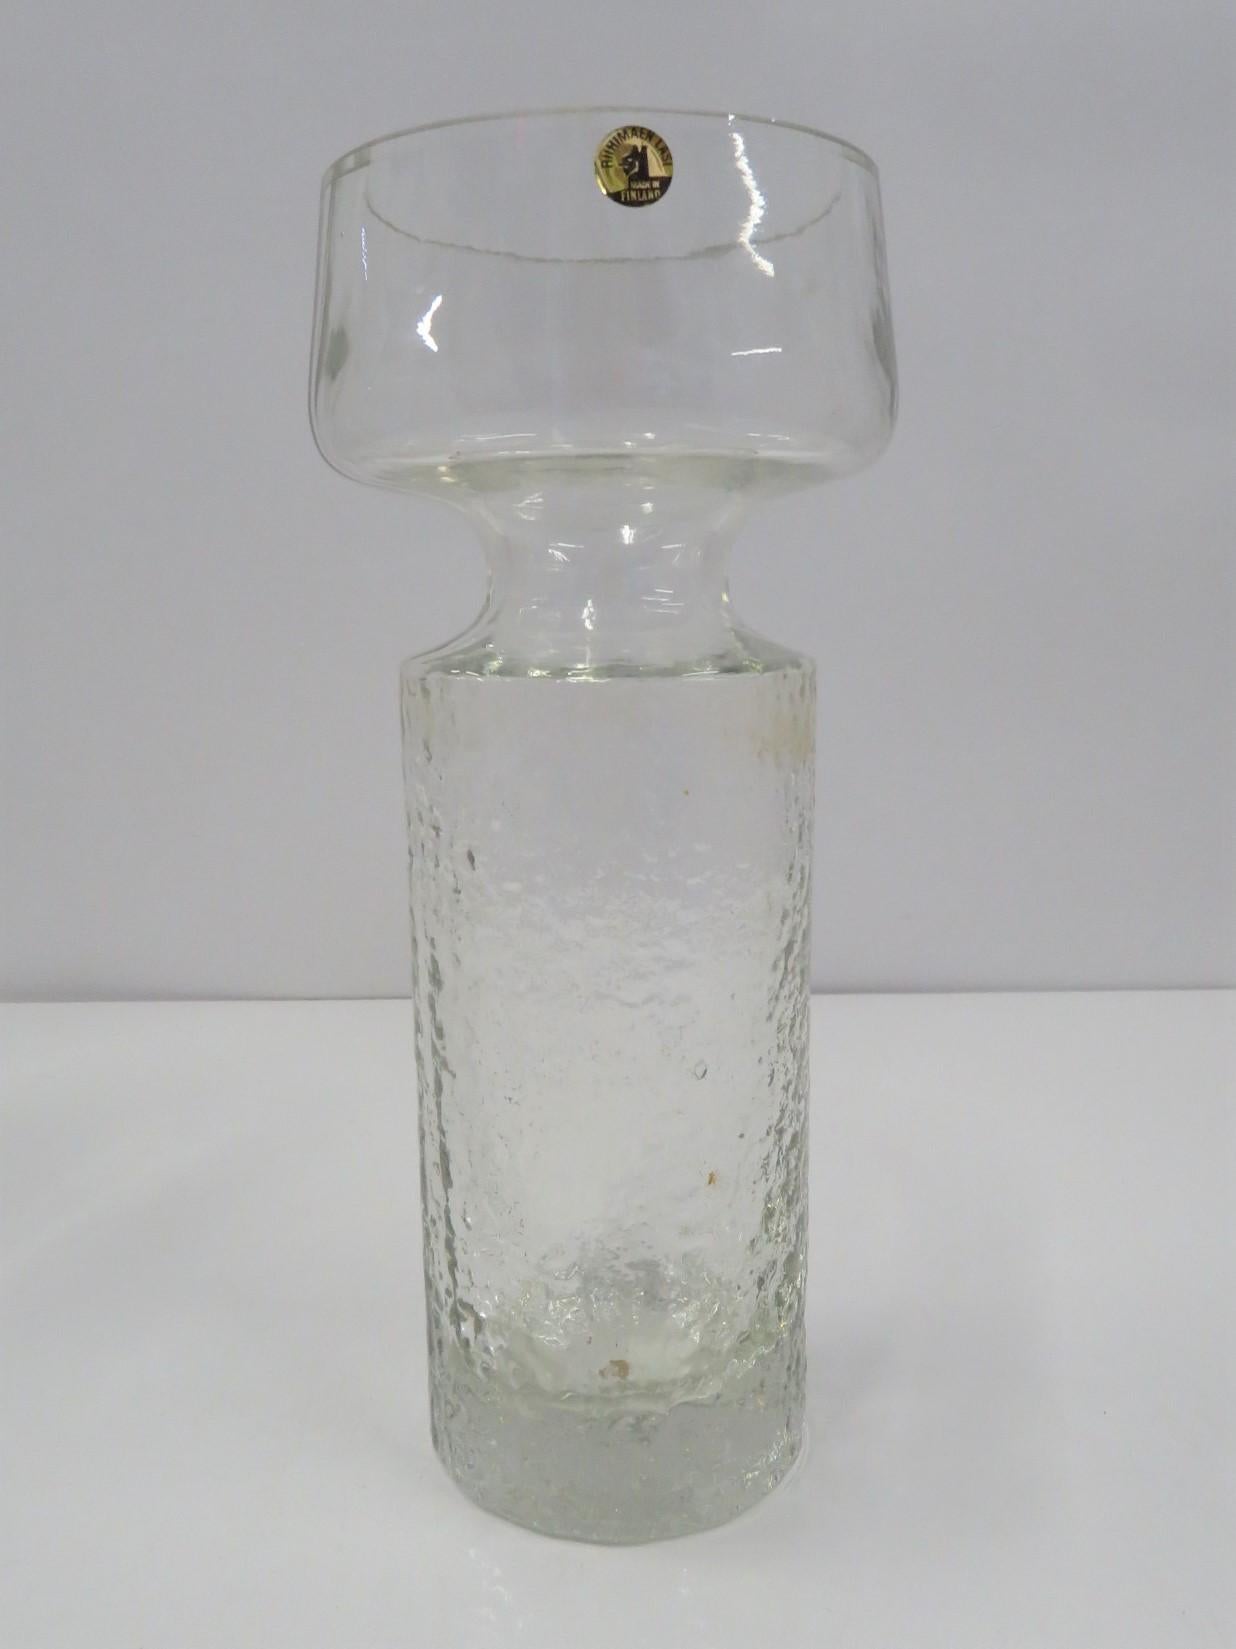 Un étonnant vase Safari en verre soufflé au moule par Tamara Aladin pour Riihimäen Lasi Oy ou Riihimaki de Finlande. Fond texturé jusqu'à l'épaule, puis transparent sur le dessus.
Joli et lourd Vase en verre clair modèle # 1495 a été produit de 1968